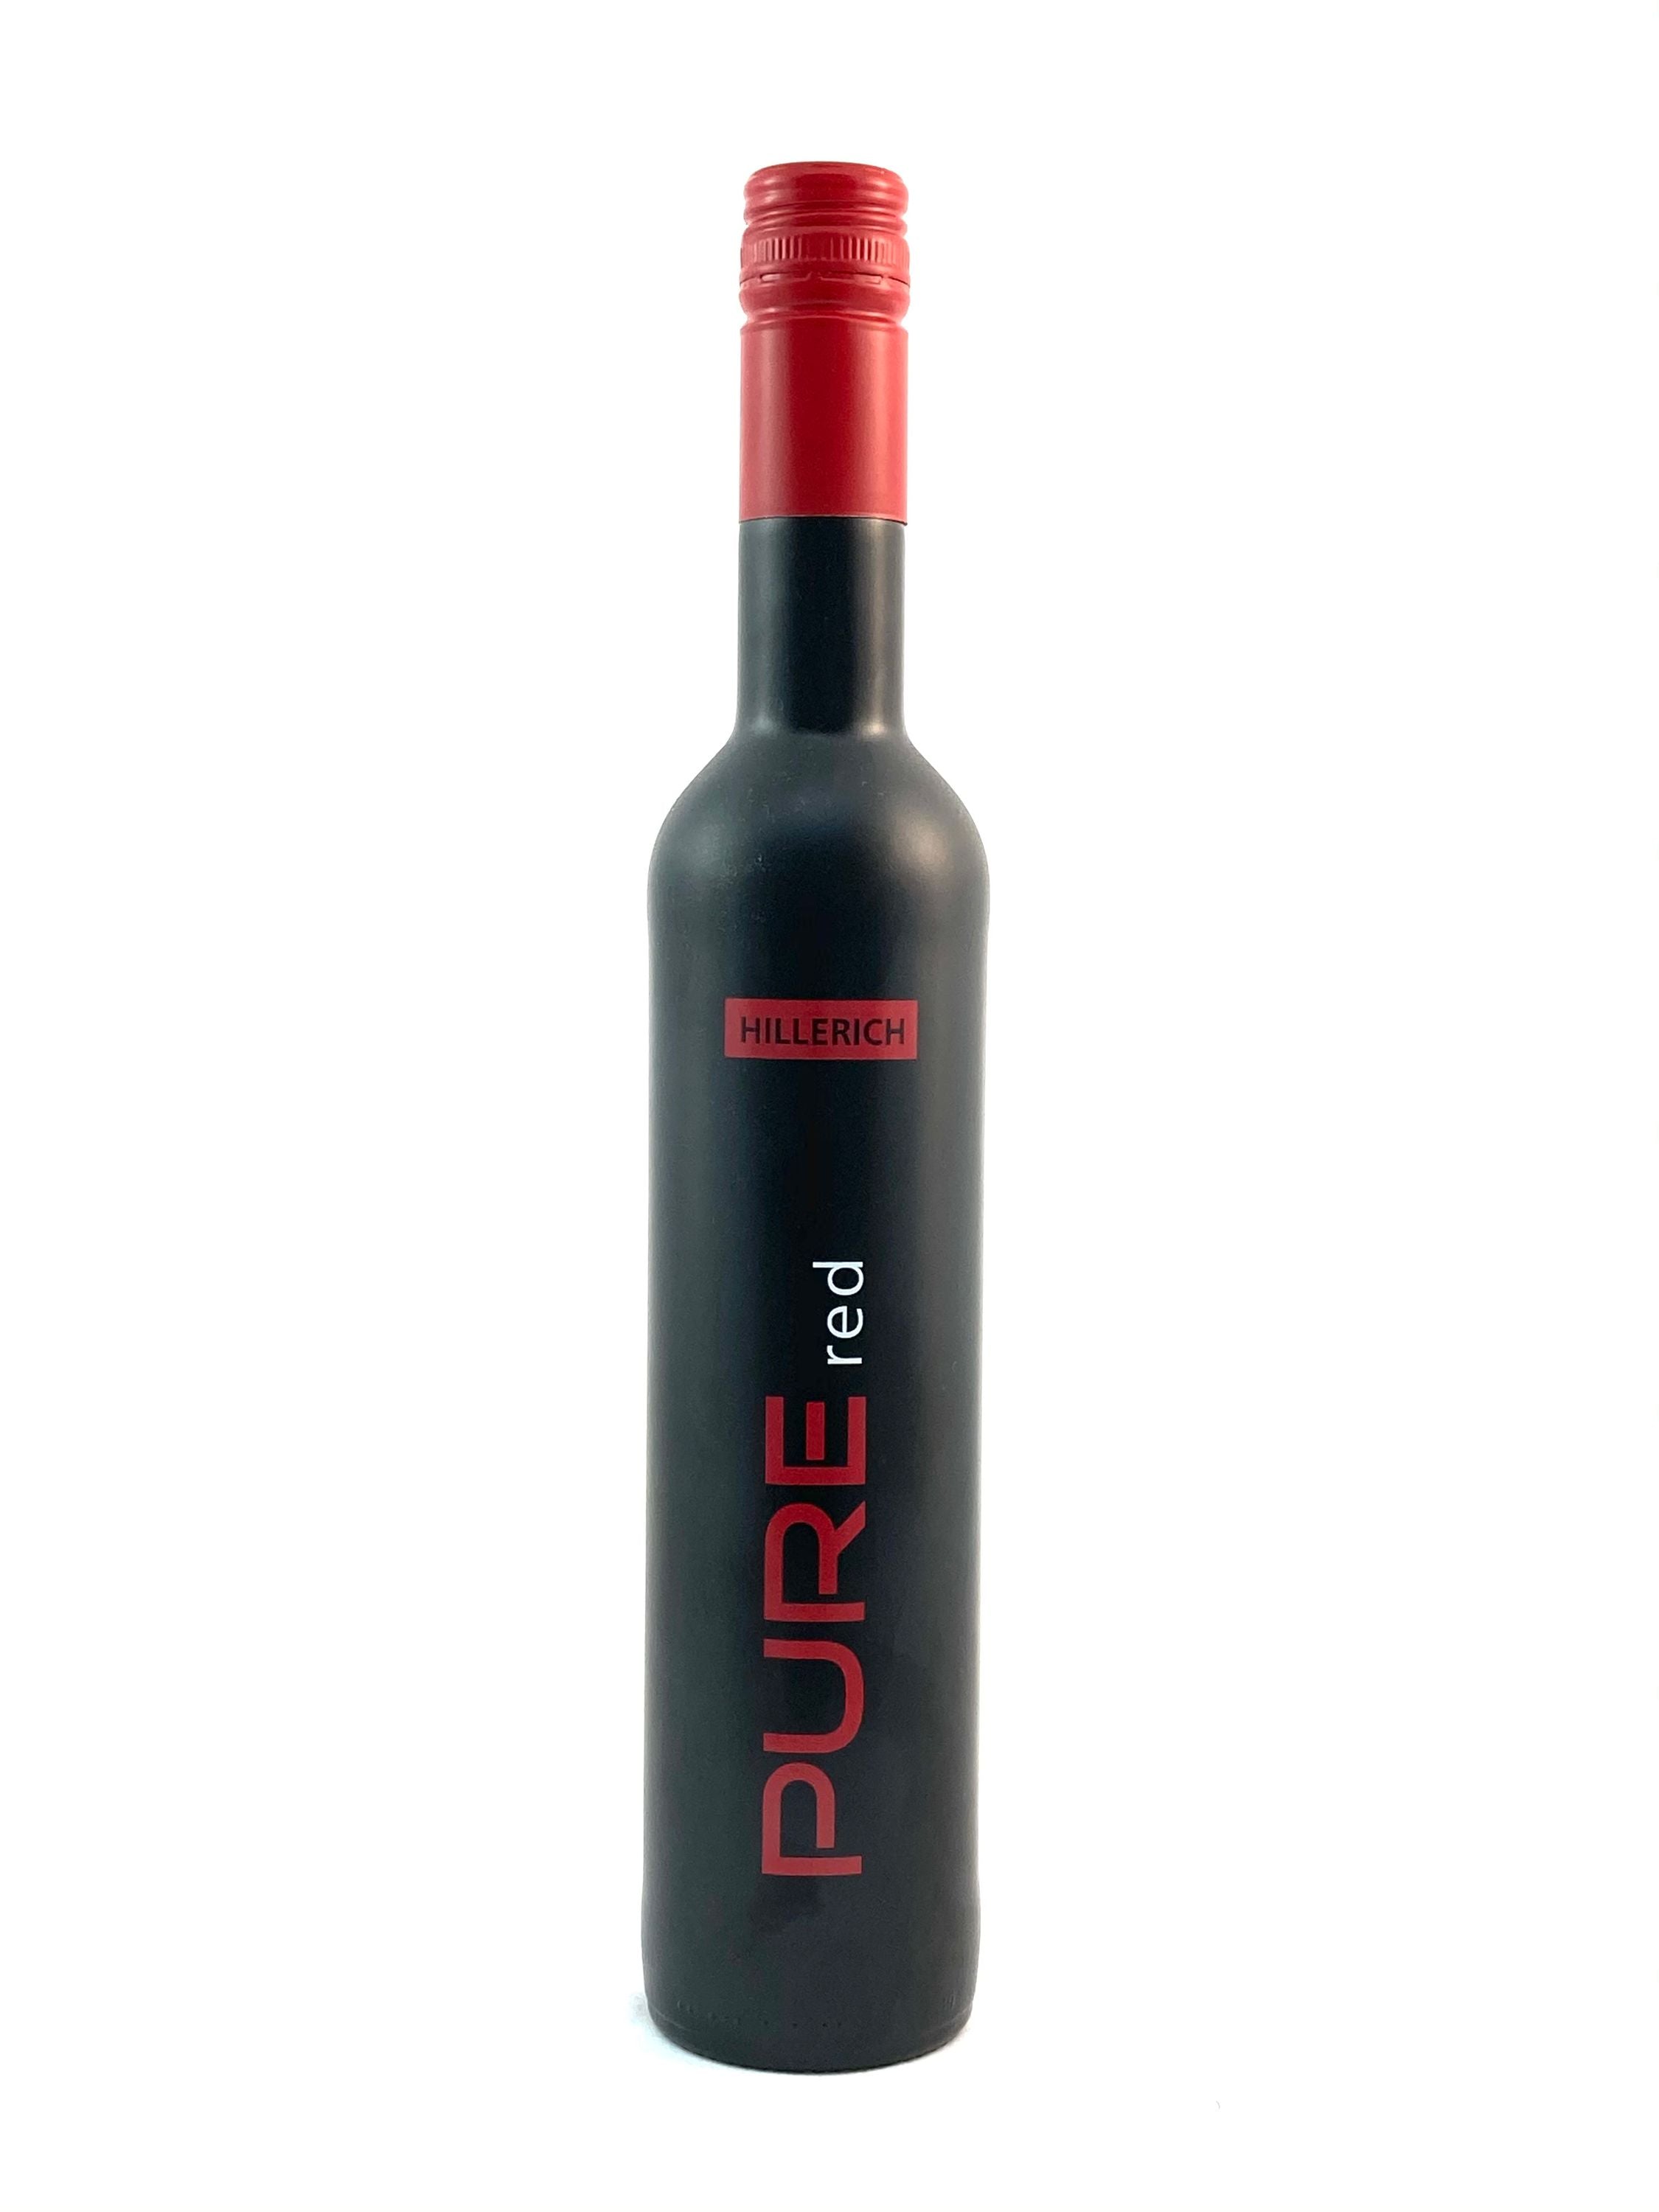 Hillerich Pure Red Portwein 0,5l, alc. 19,5 Vol.-%